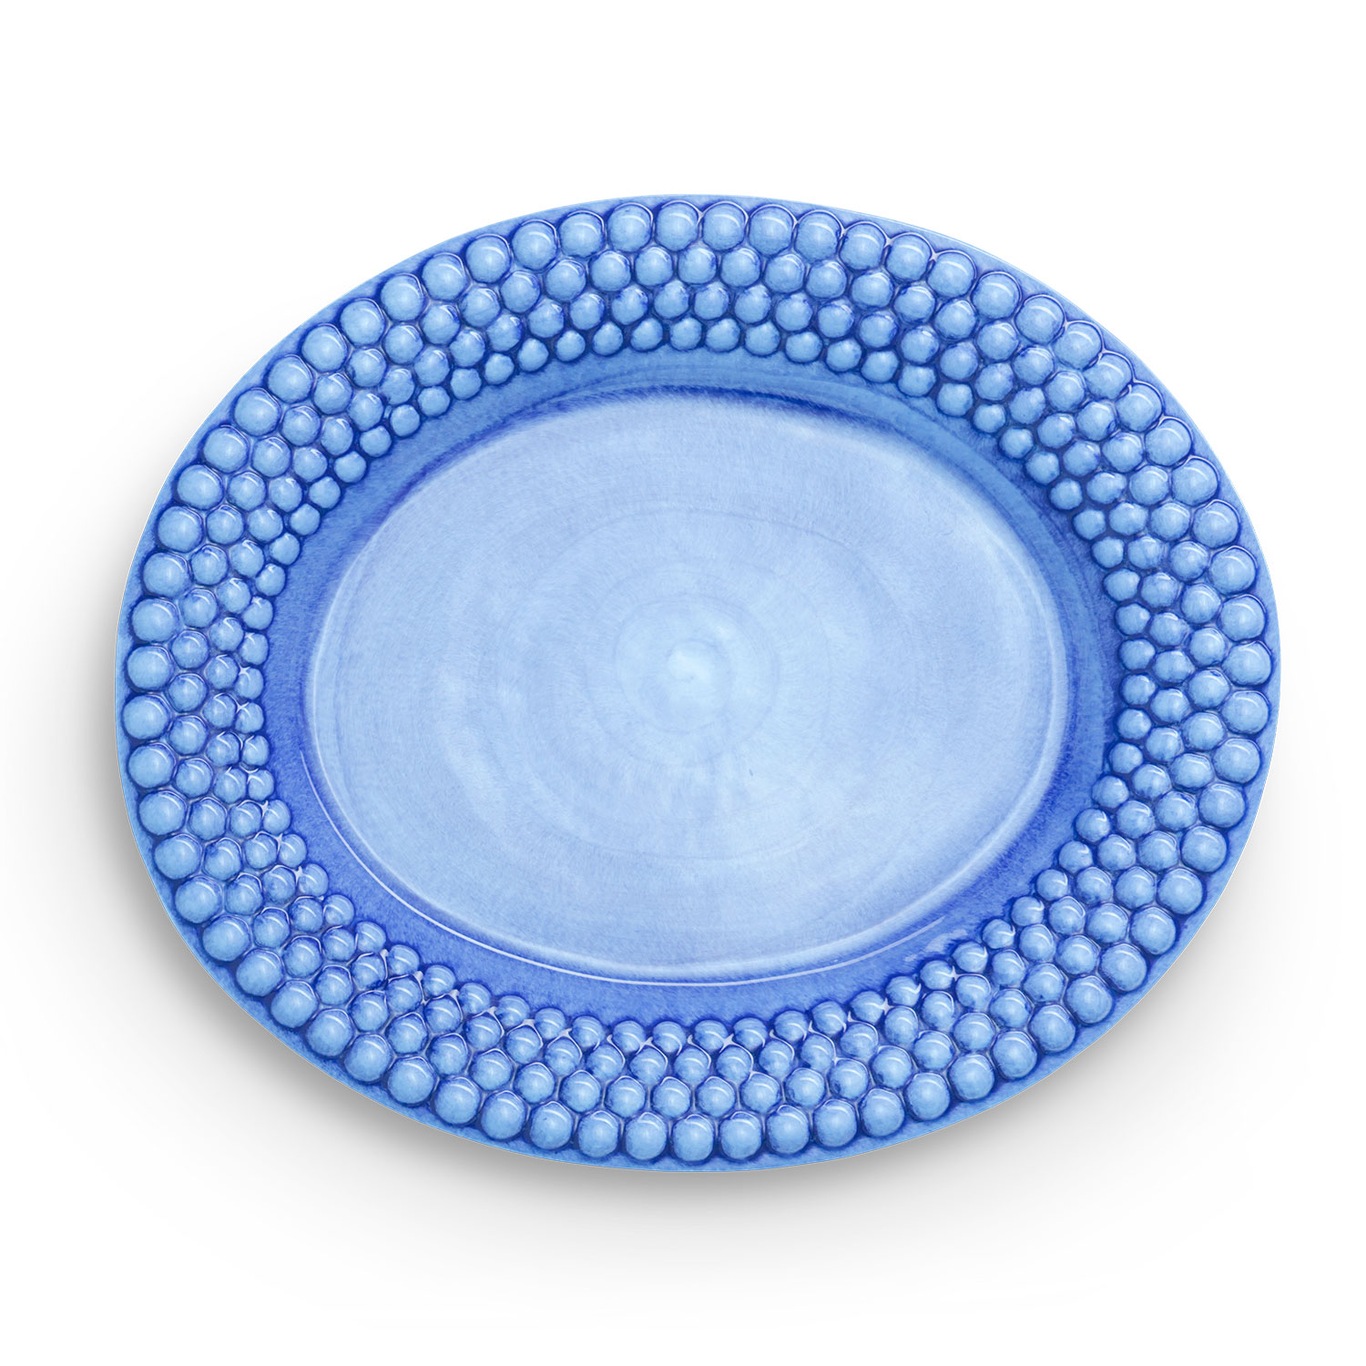 Bubbles Platter Oval 35 cm, Light Blue